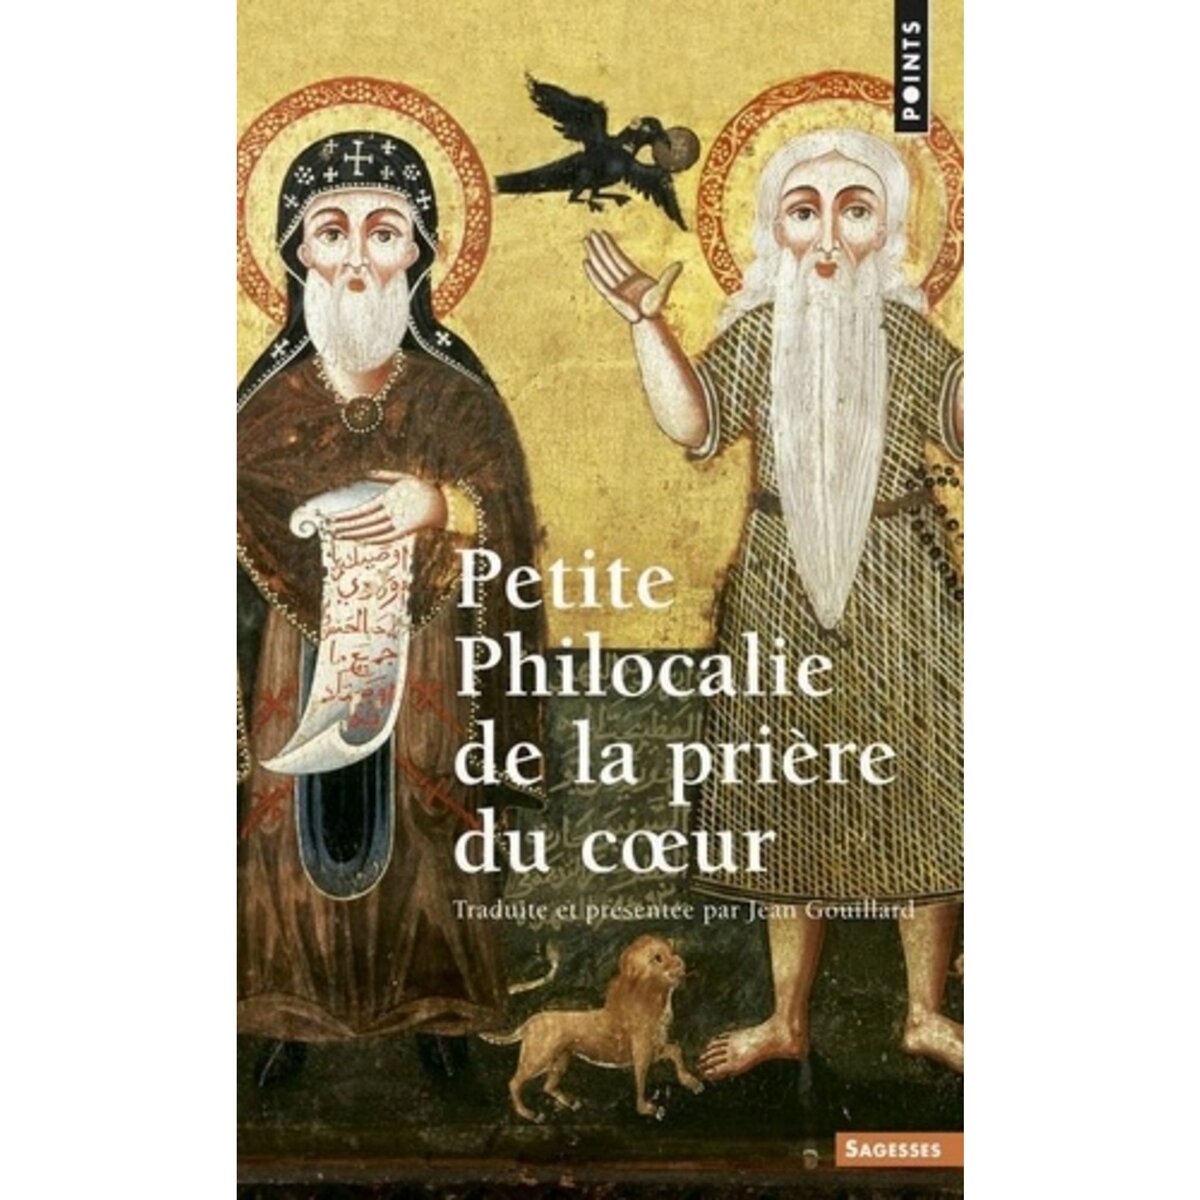  PETITE PHILOCALIE DE LA PRIERE DU COEUR, Gouillard Jean